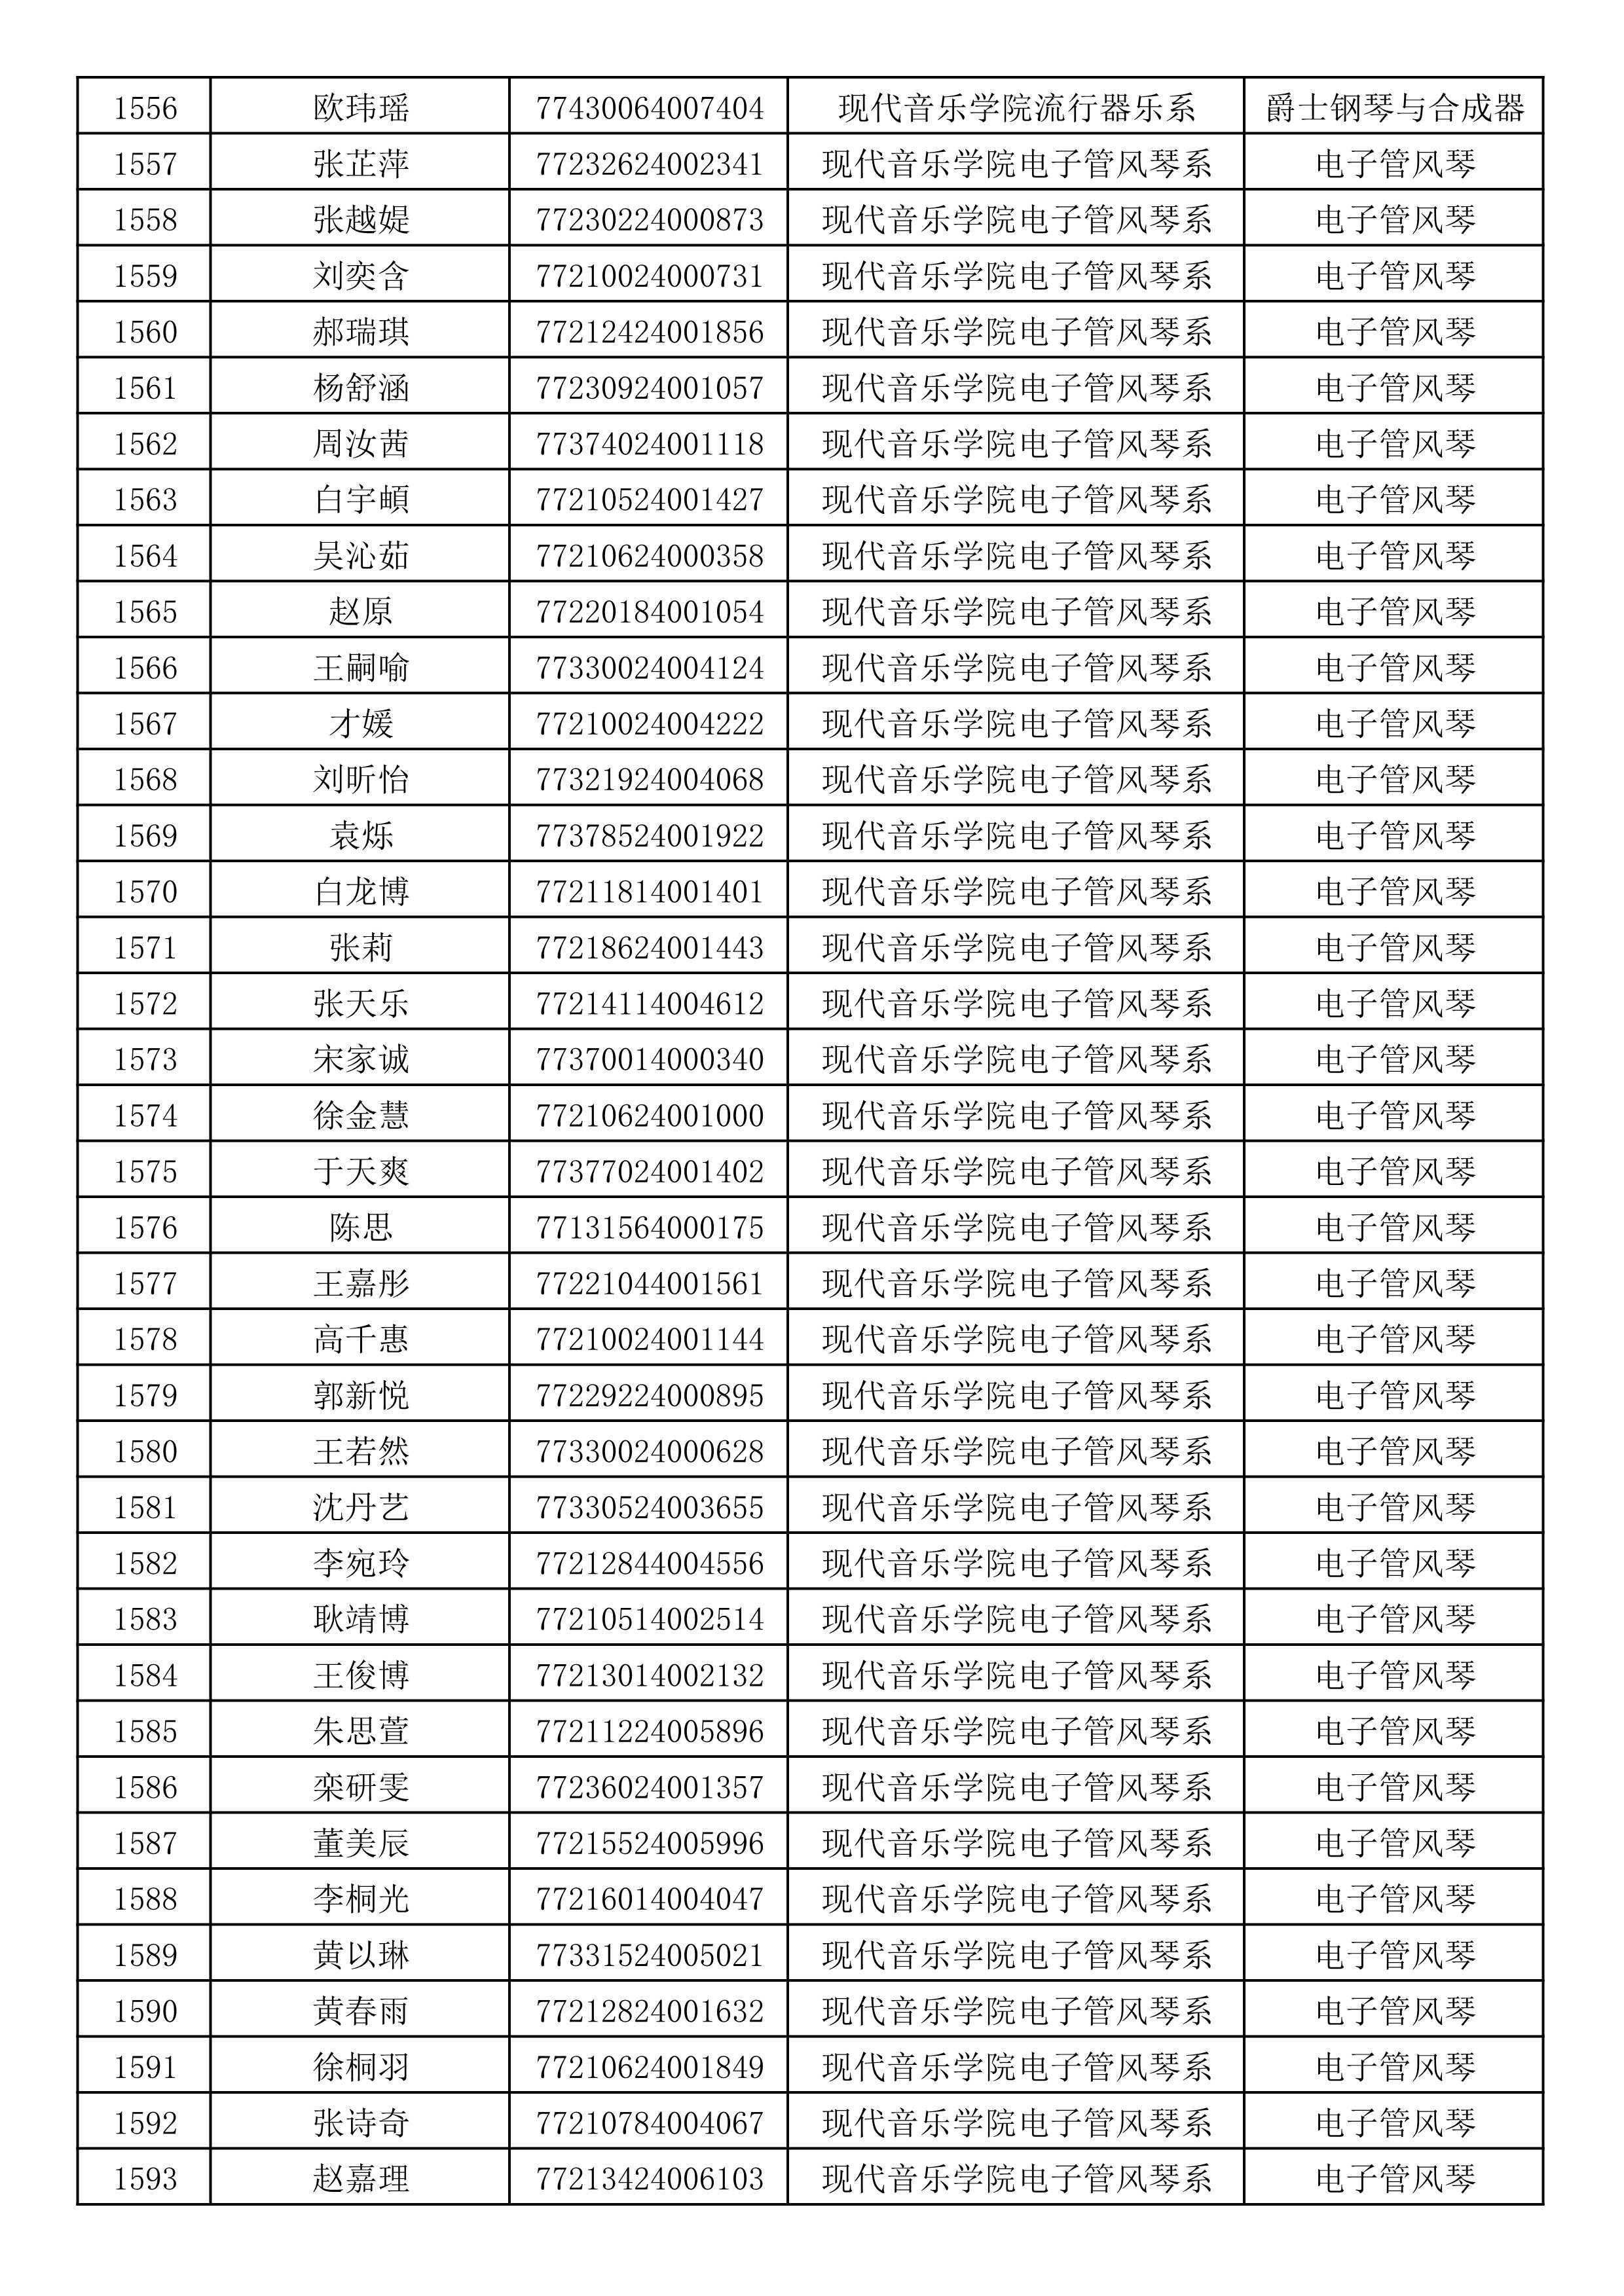 沈阳音乐学院2019年本科招生考试初试合格名单_42.jpg